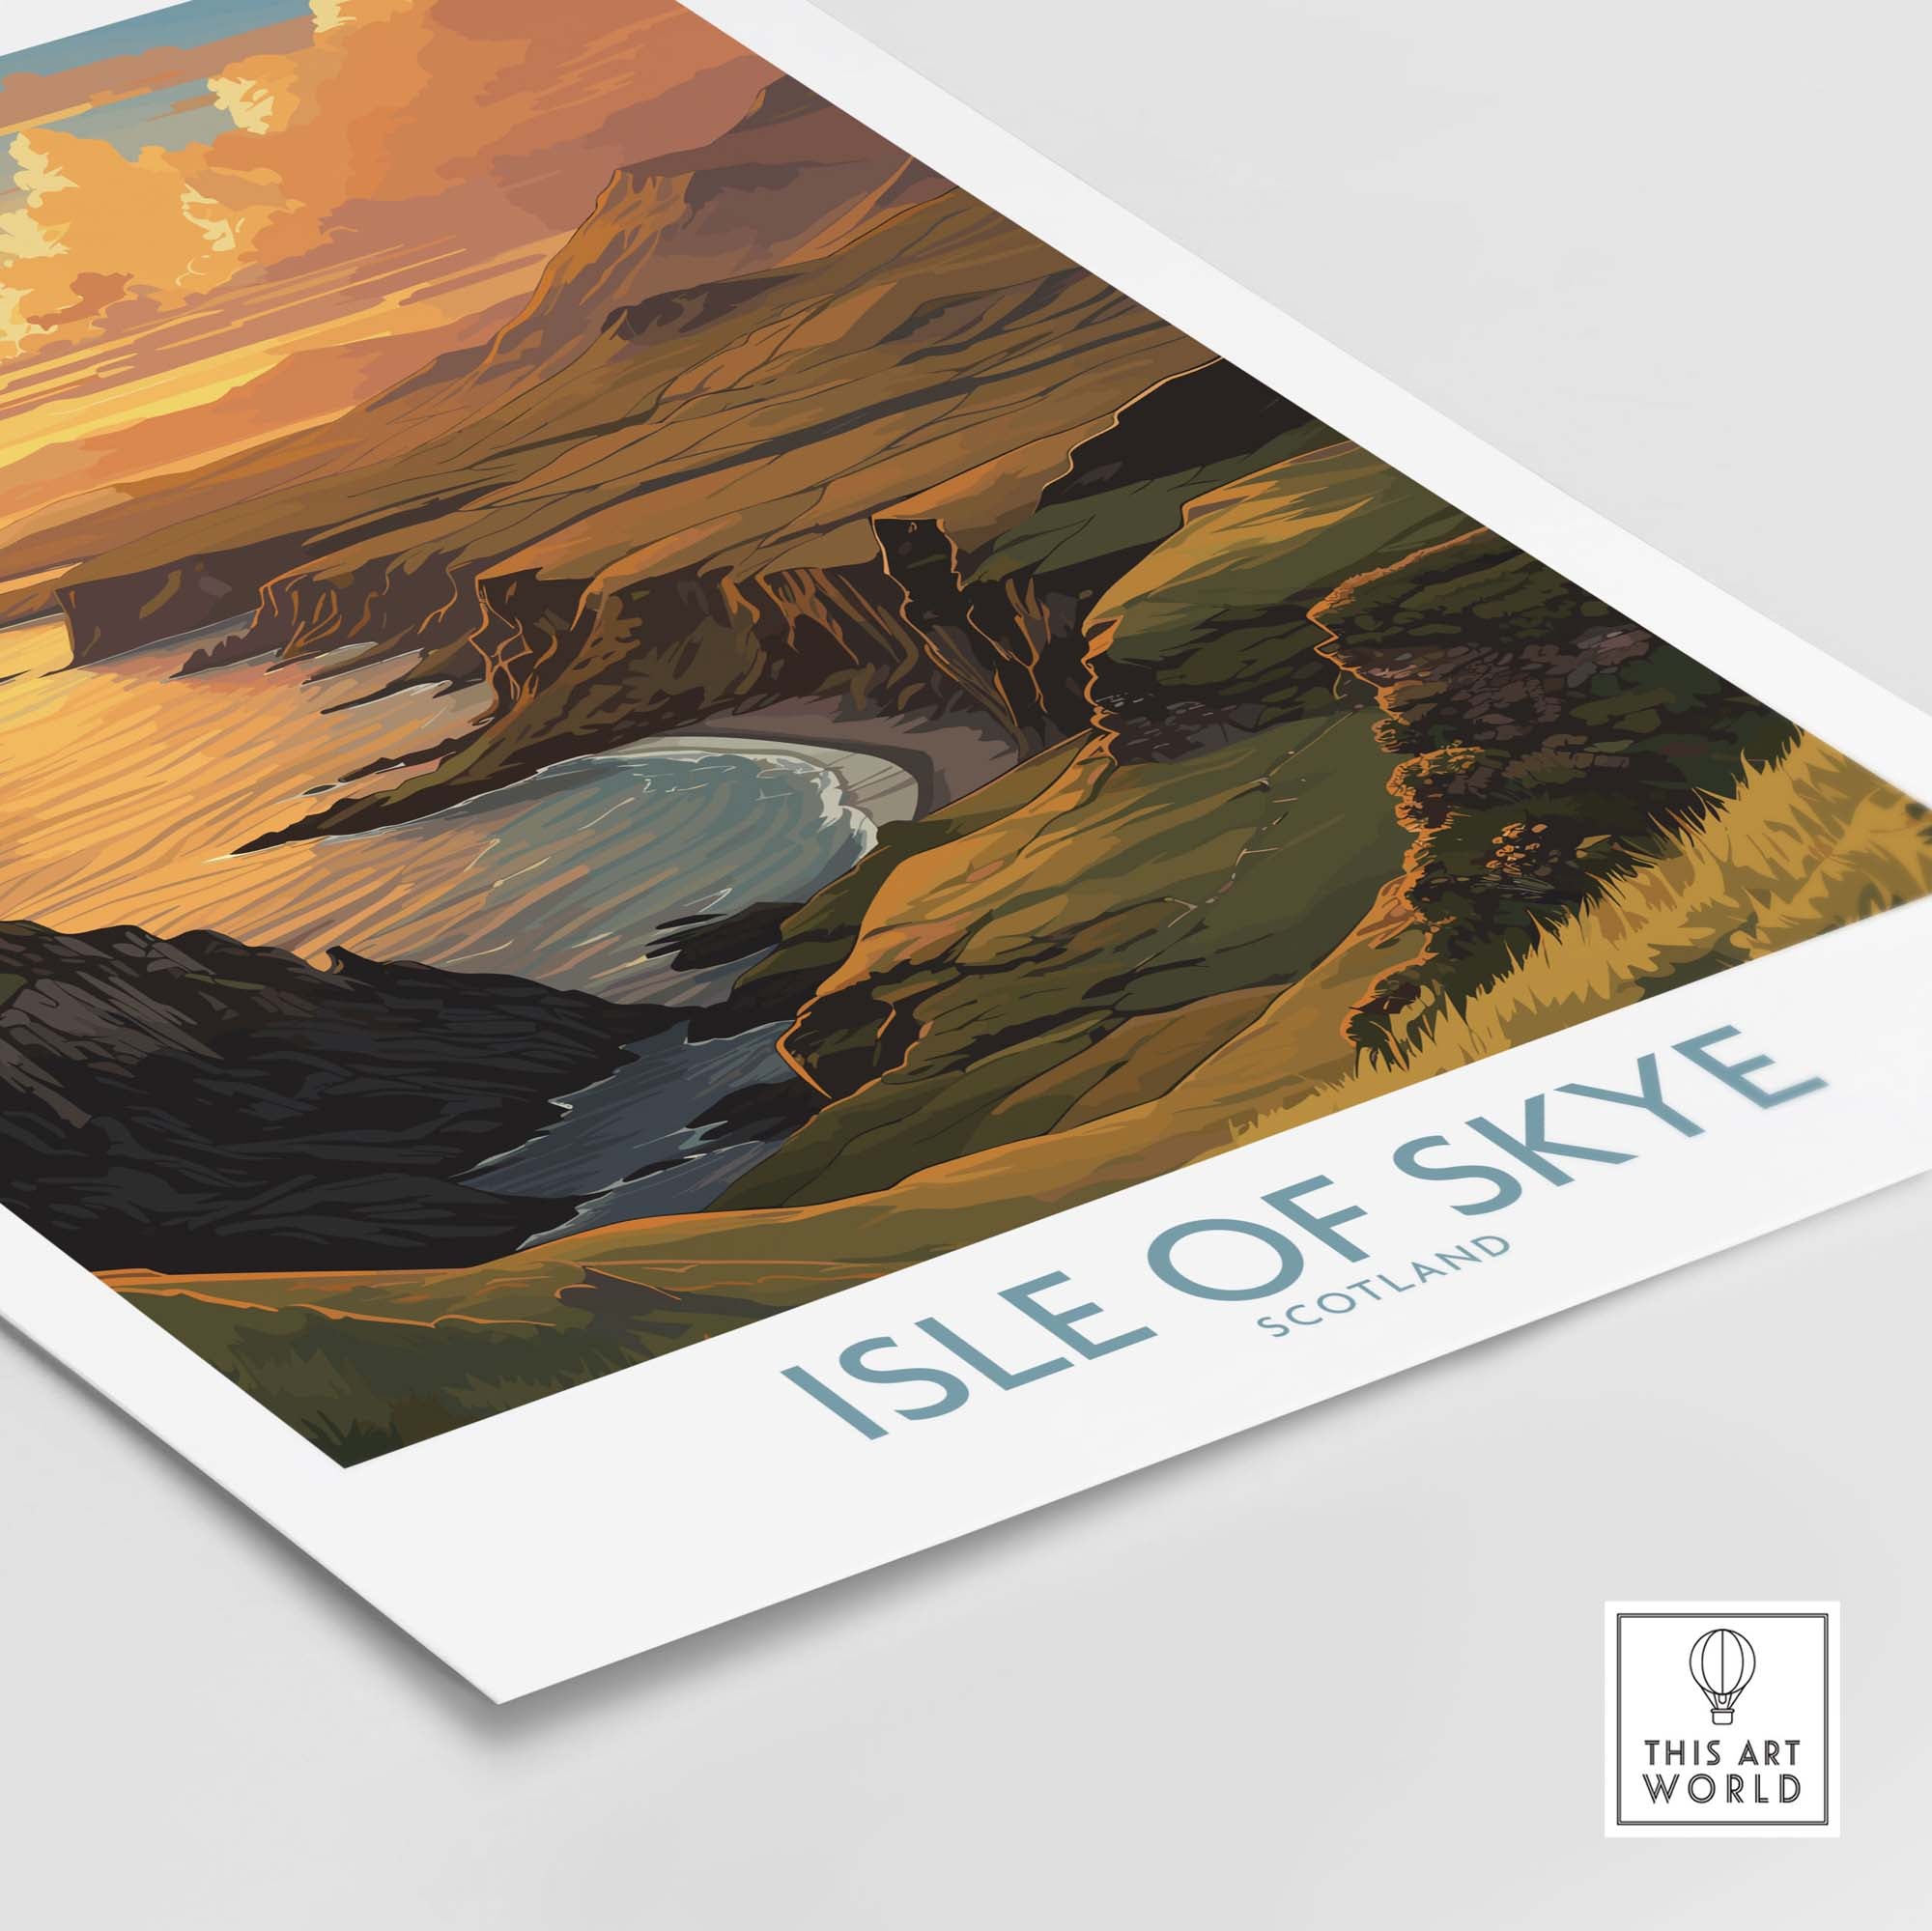 Isle of Skye Wall Art Print